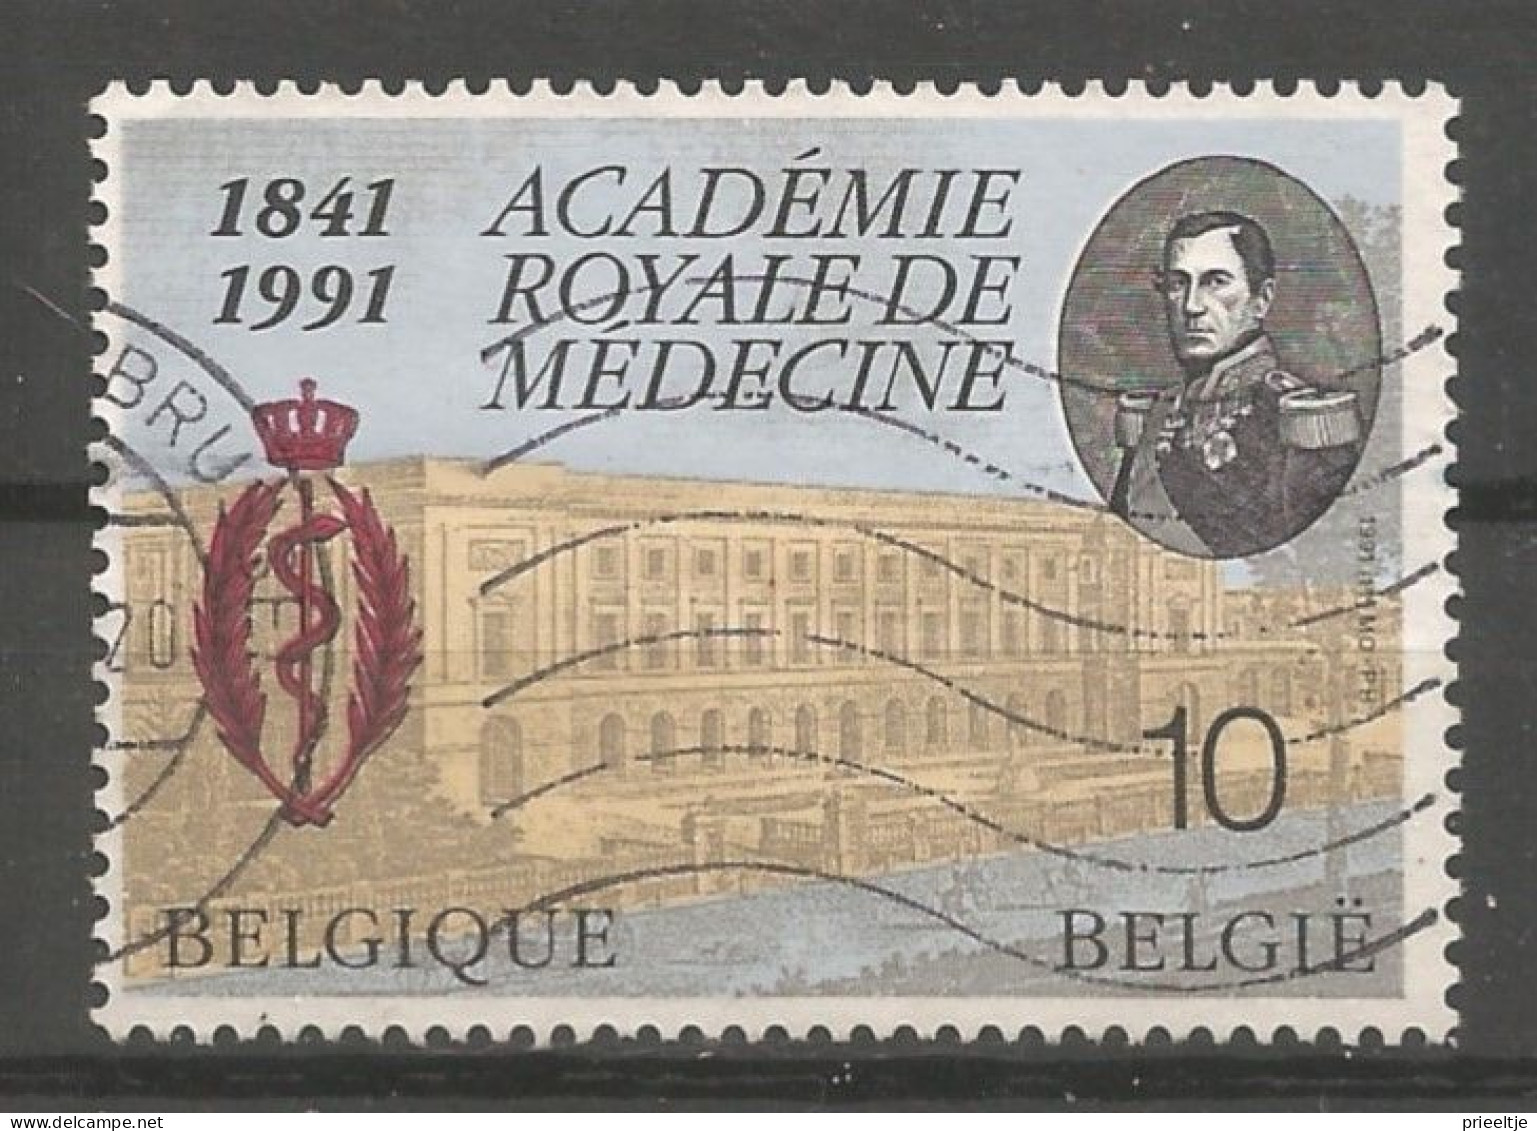 Belgie 1991 Mediche Academie Brussel OCB 2416  (0) - Used Stamps